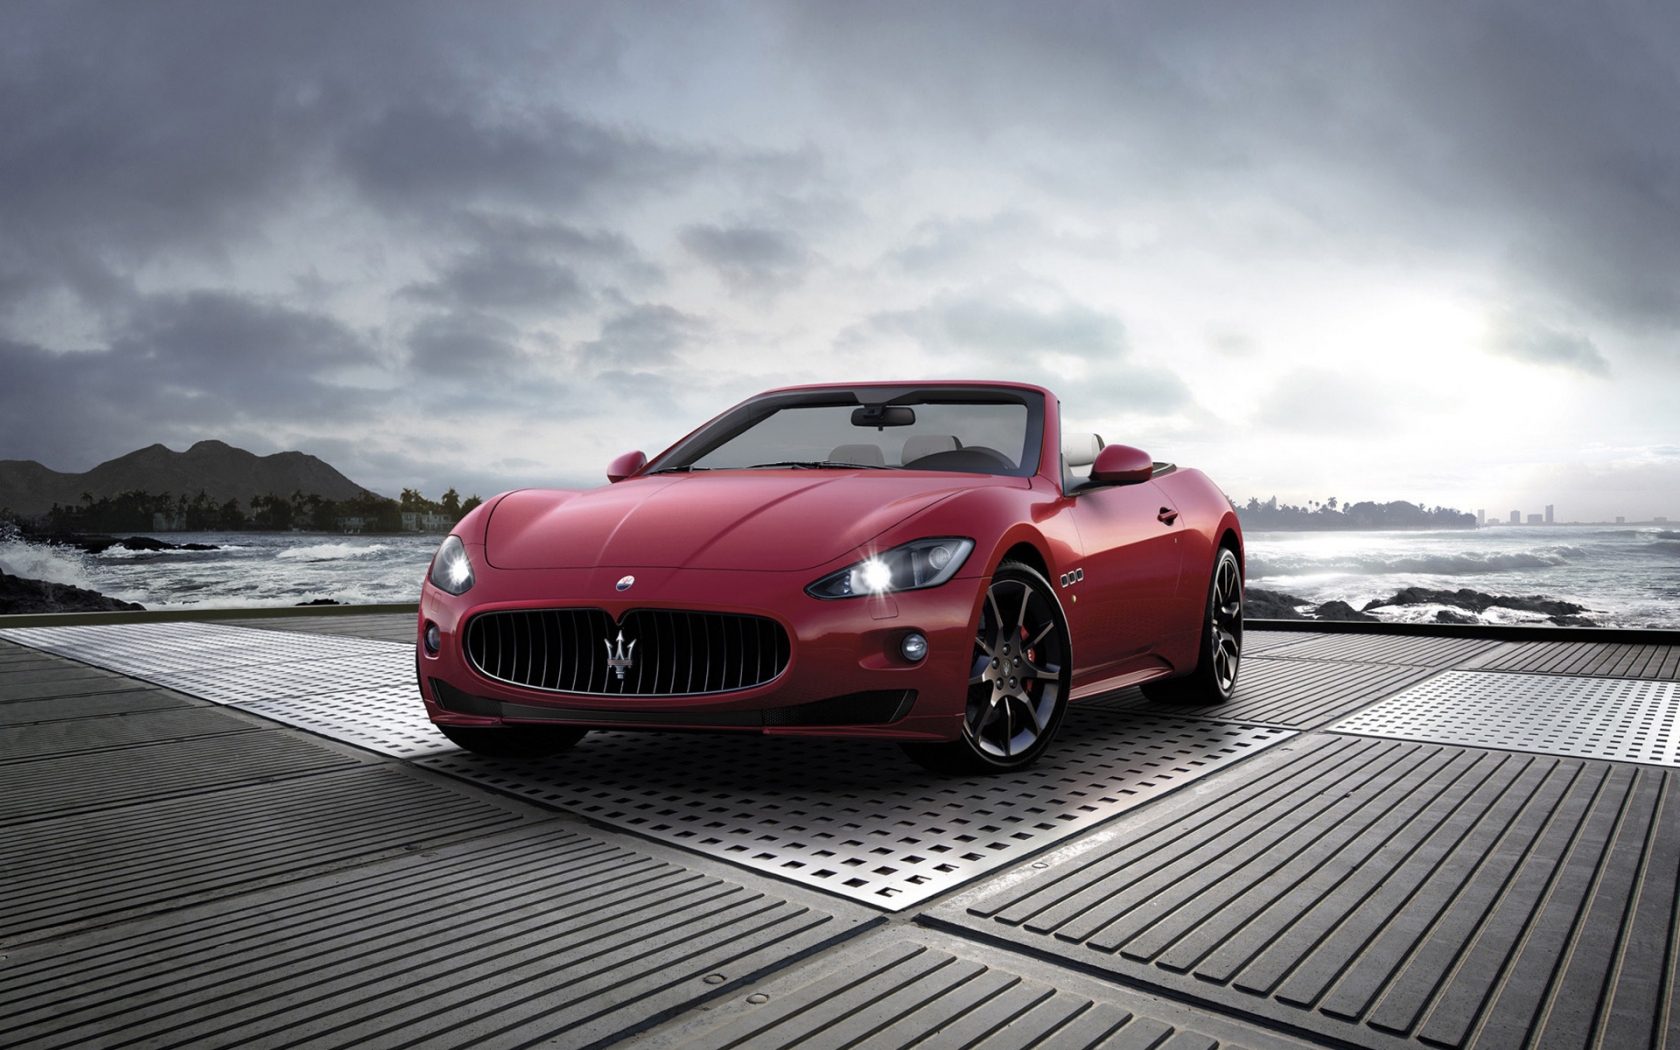 2011 Maserati GranCabrio Sport for 1680 x 1050 widescreen resolution